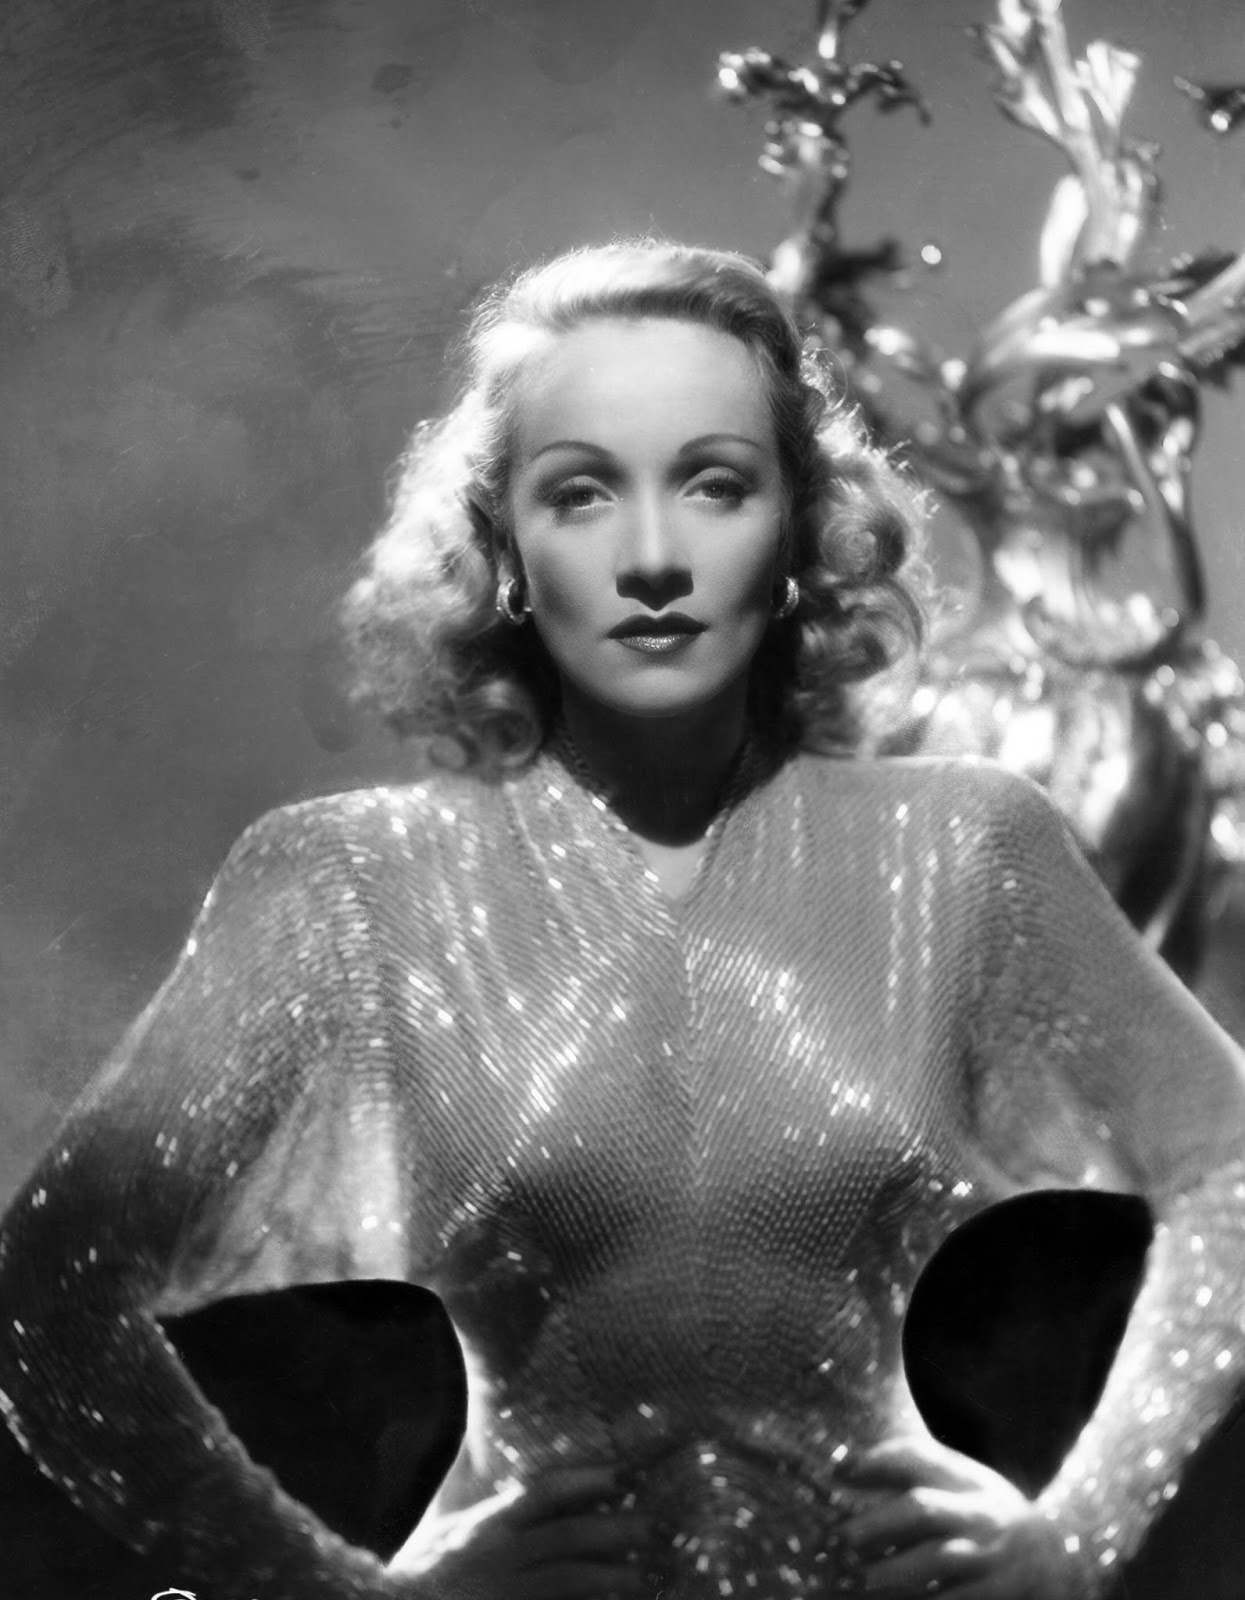 Back to Golden Days: Happy Birthday, Marlene Dietrich!